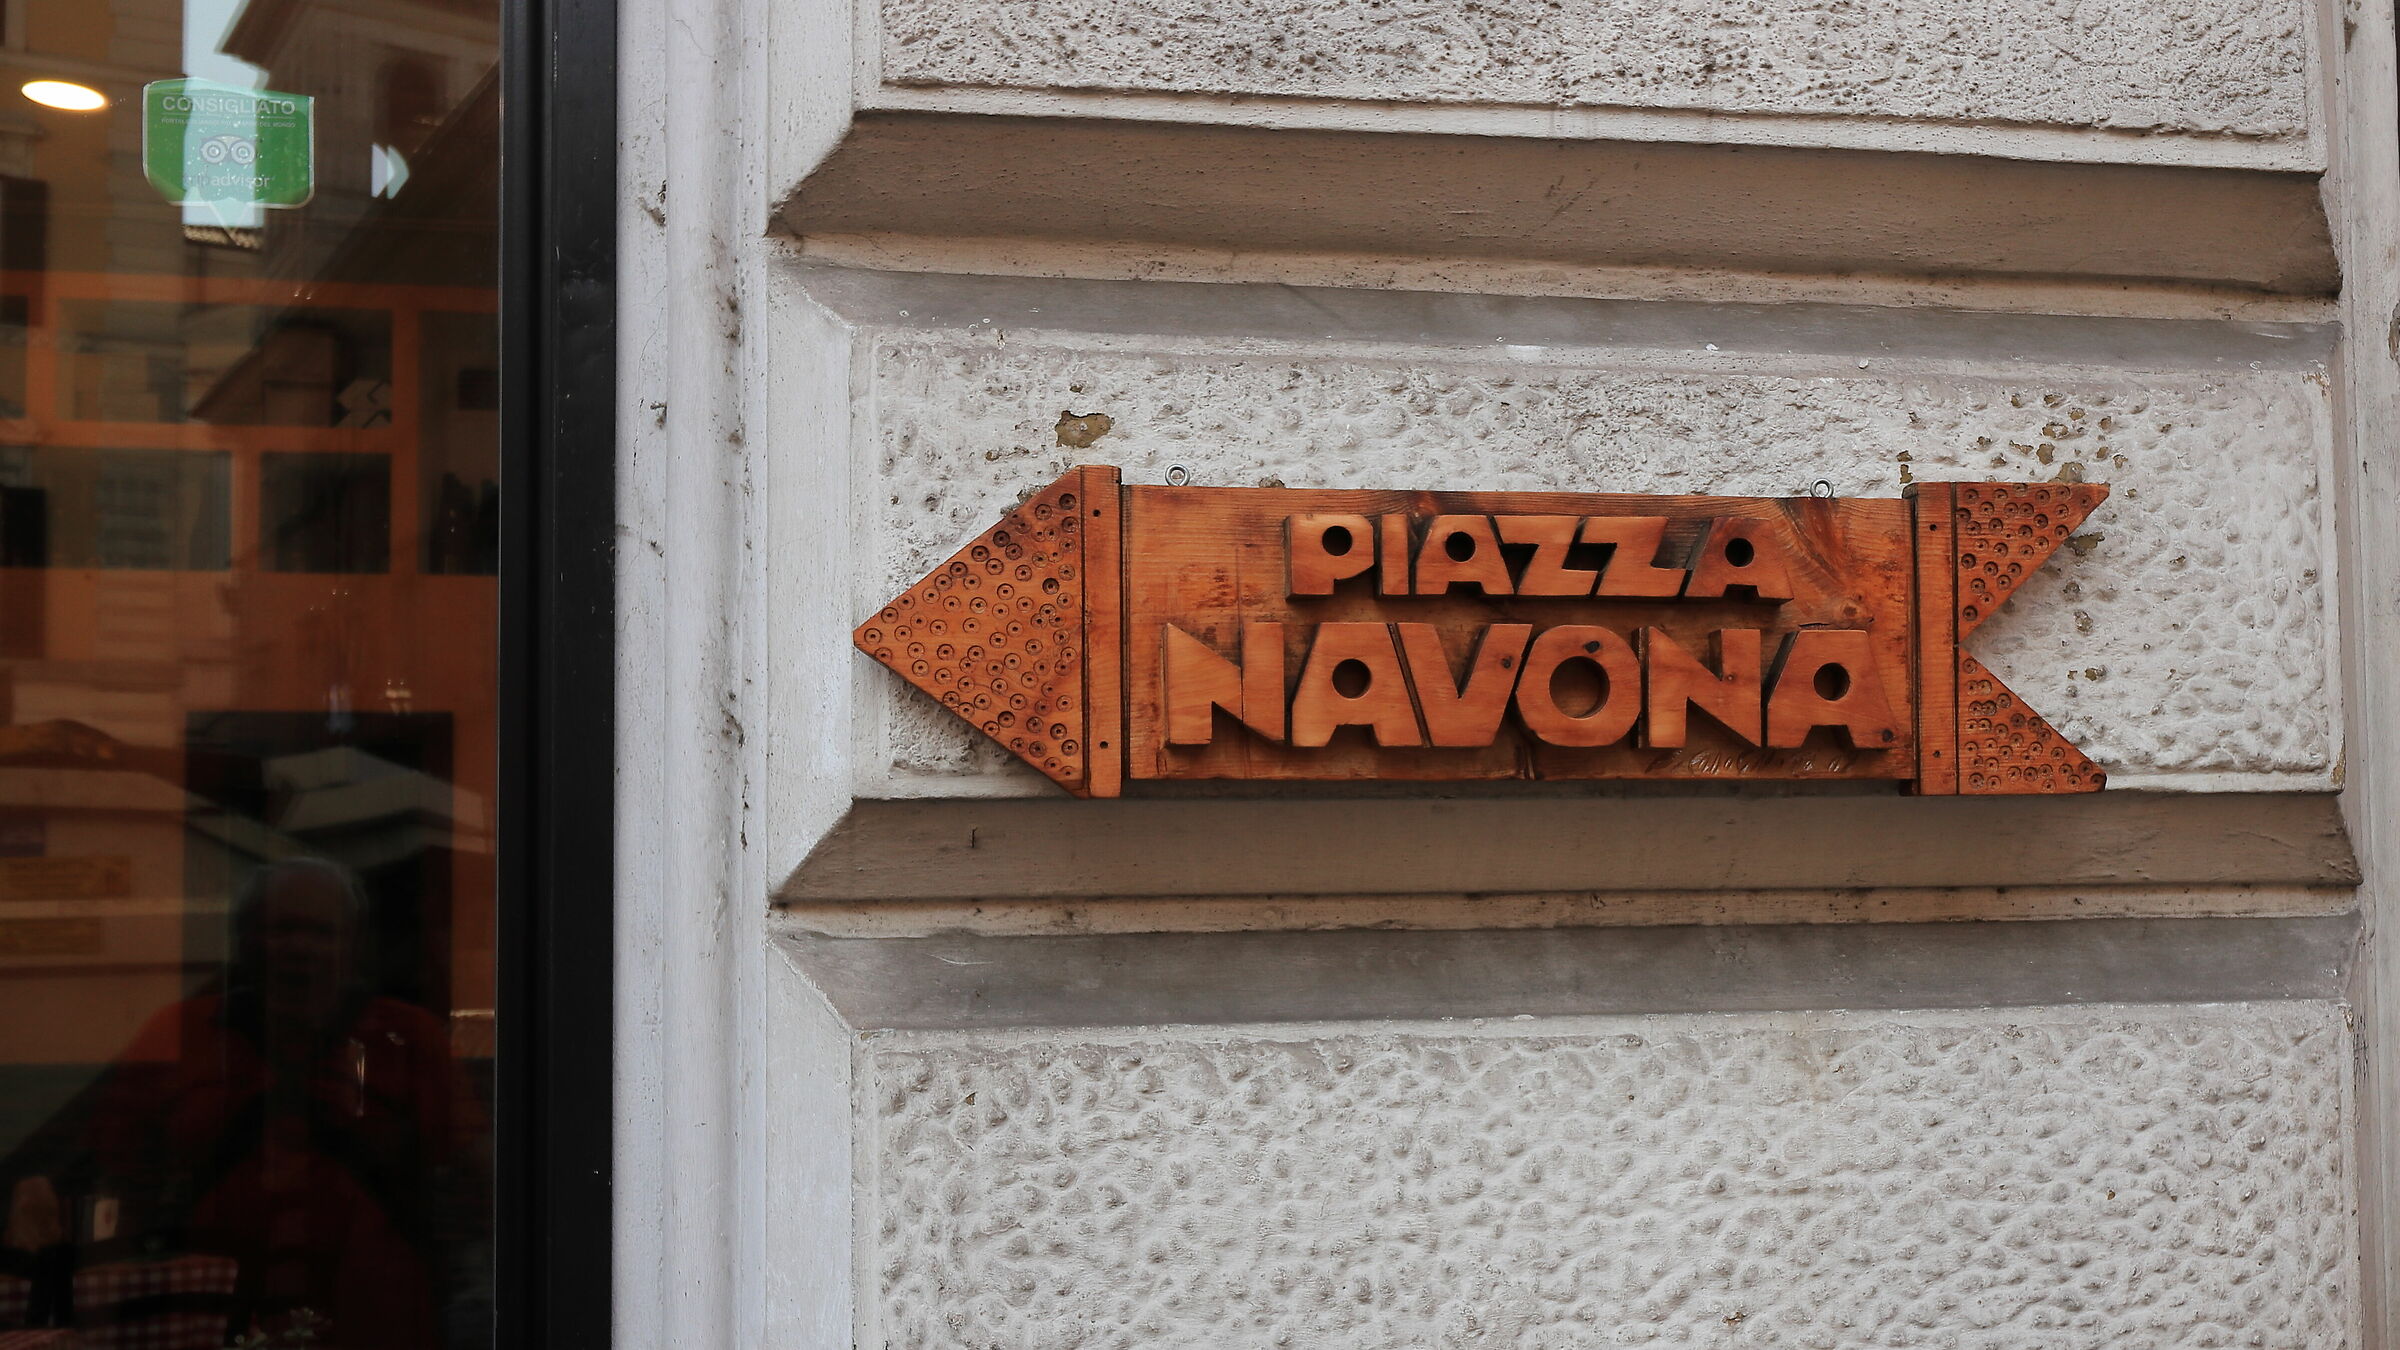 Towards Piazza Navona...